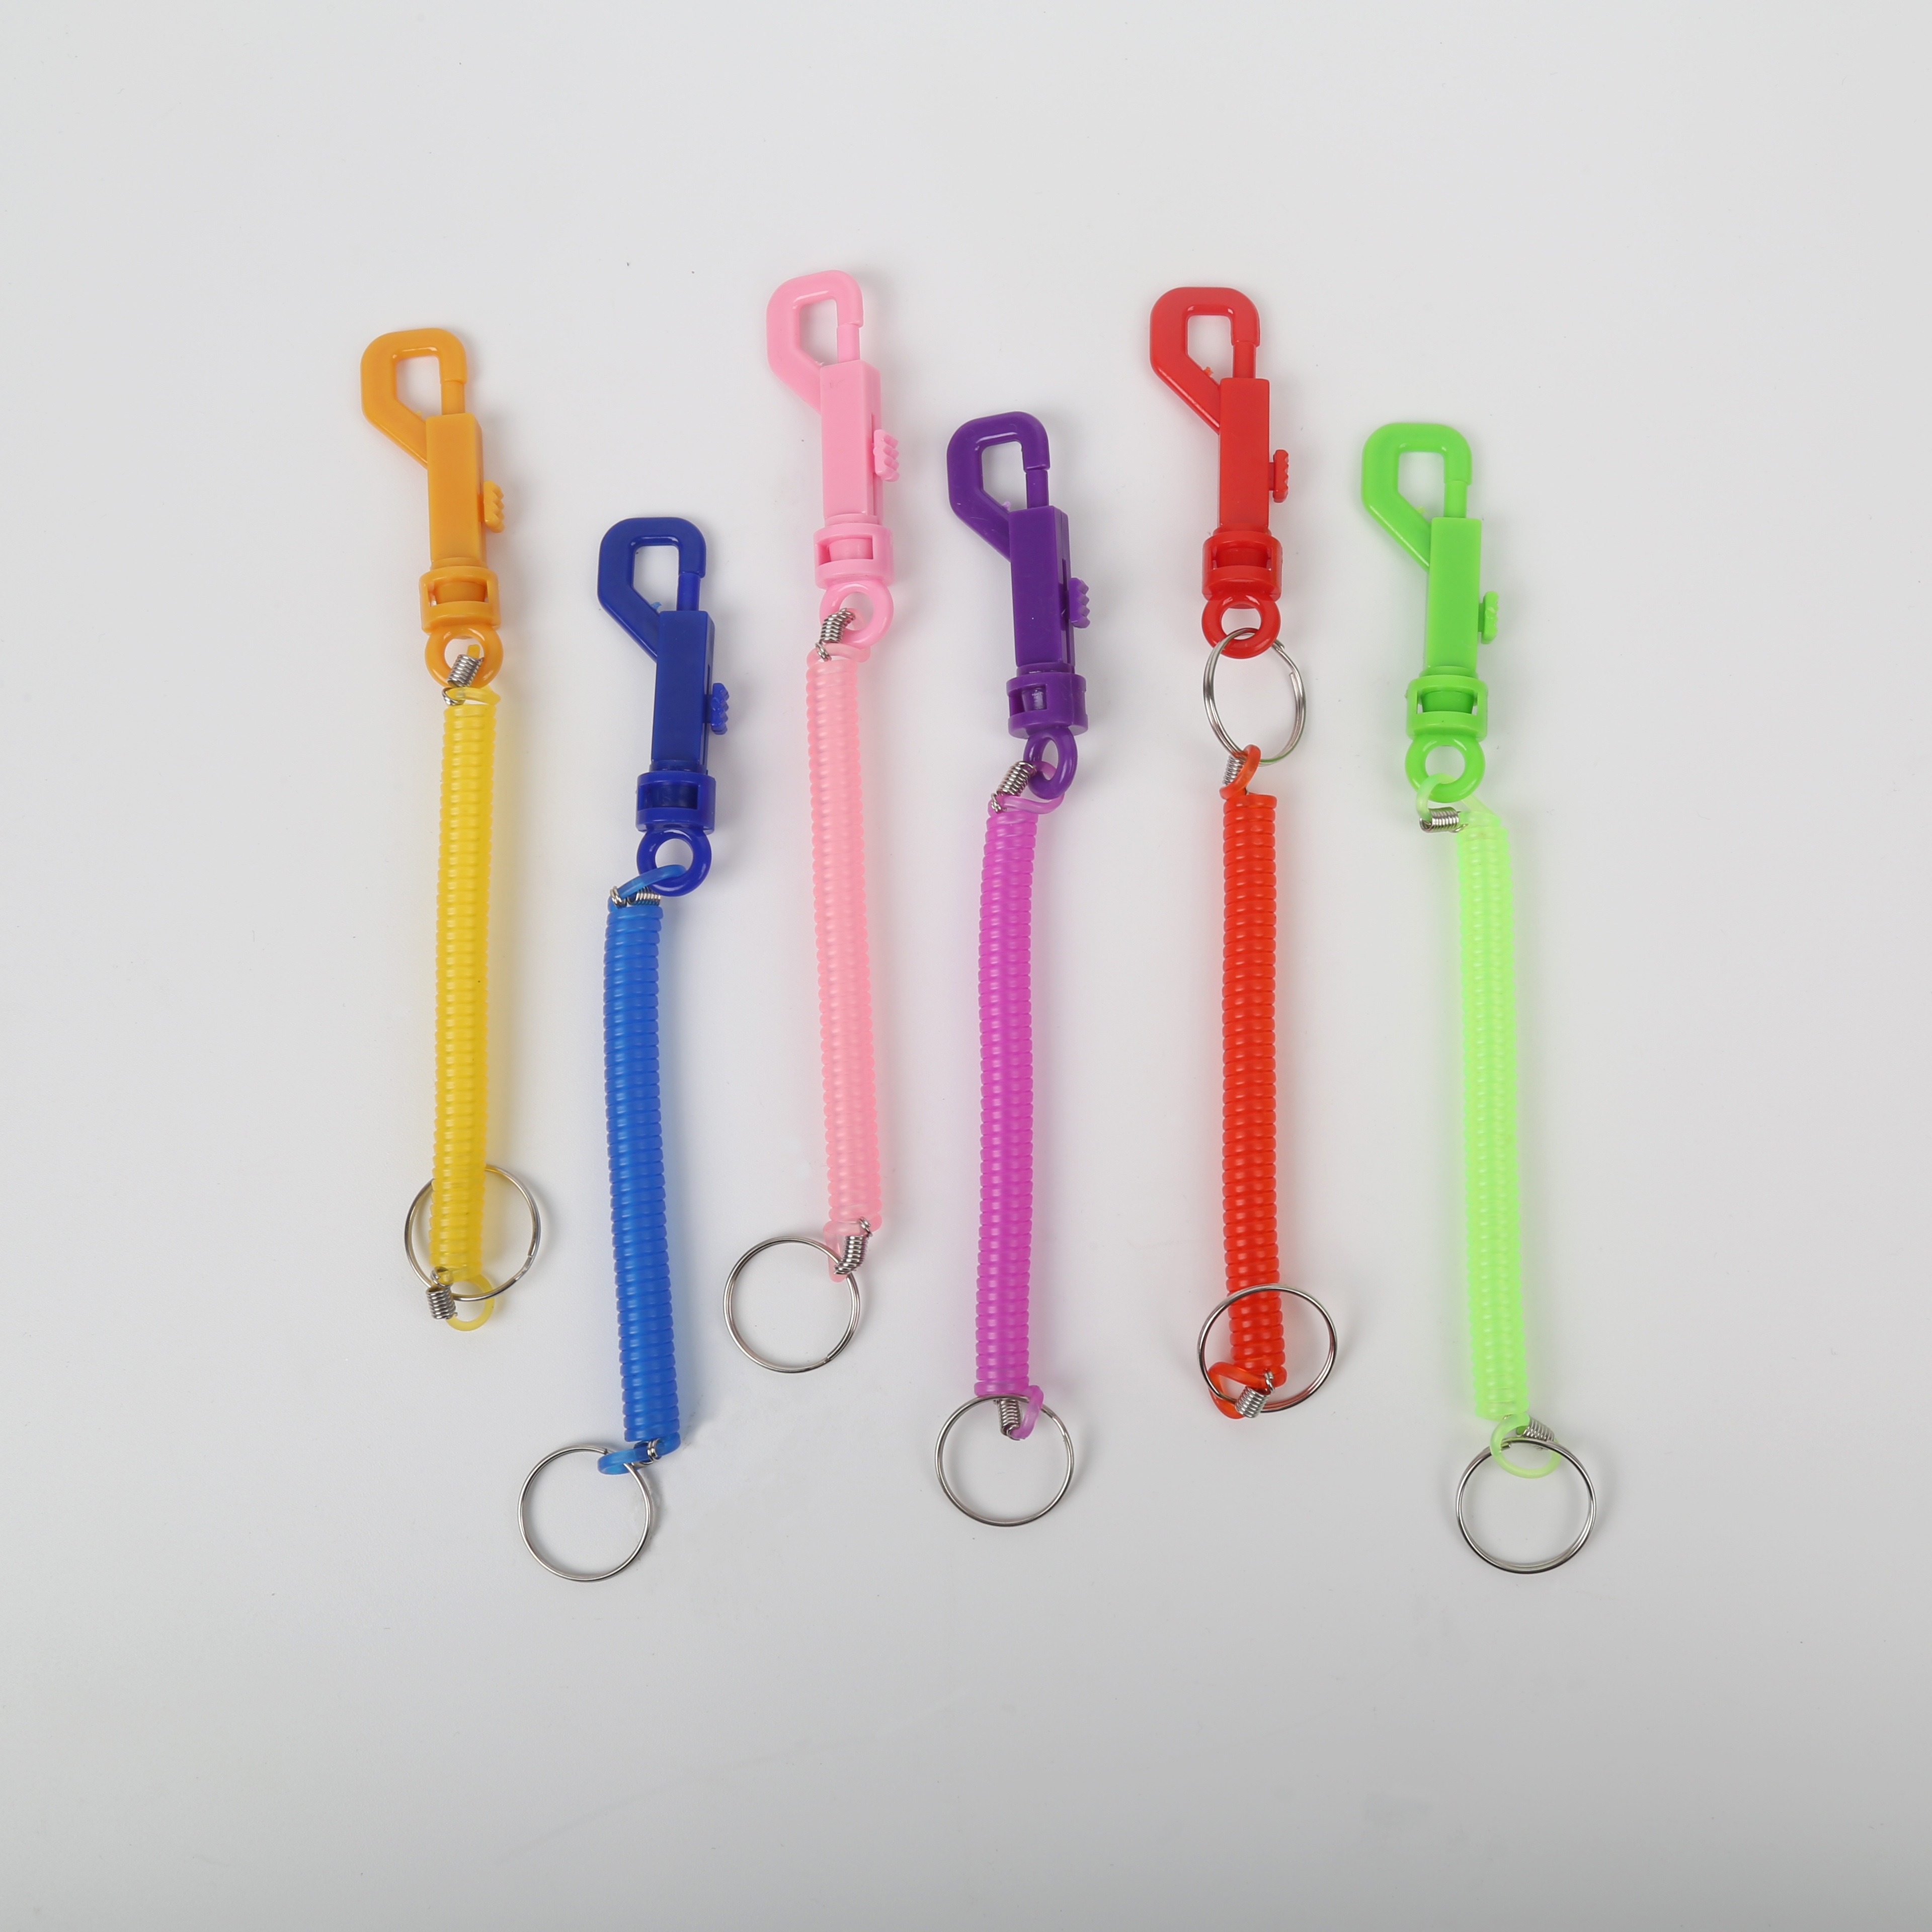 弹簧钥匙绳 塑料钥匙扣 彩色弹簧链  手机链弹性好 厂家专供 图